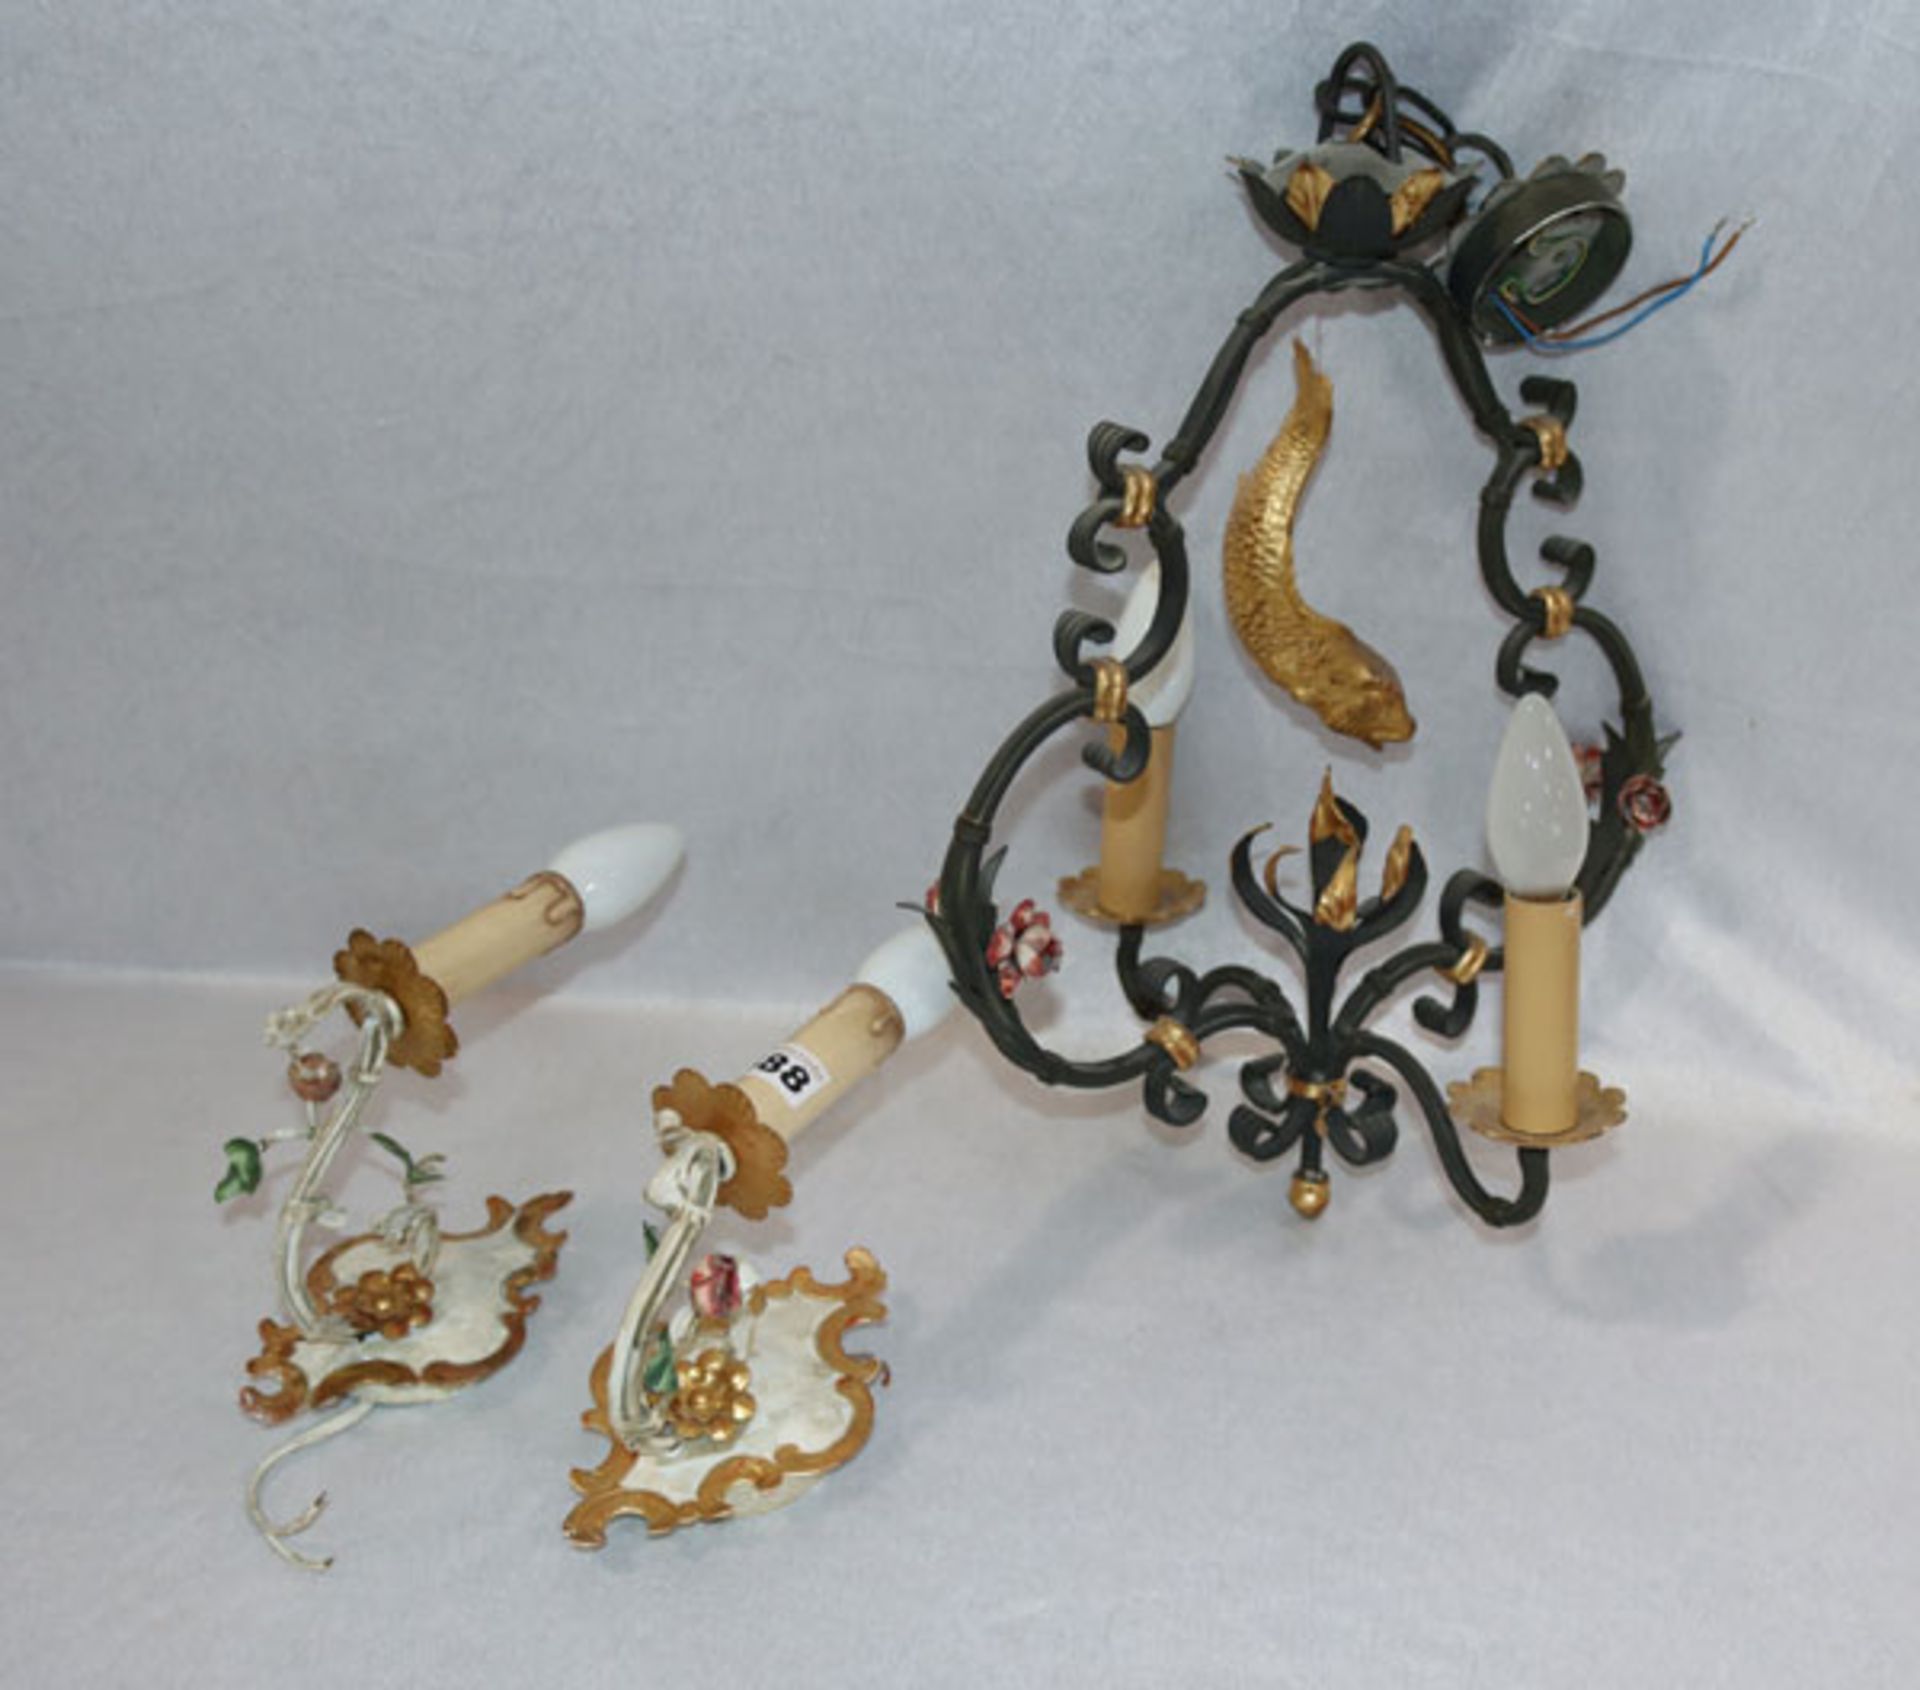 Paar schmiedeeiserne Wandlampen, einarmig mit plastischem Rosendekor, beige/gold/bunt bemalt, H 25